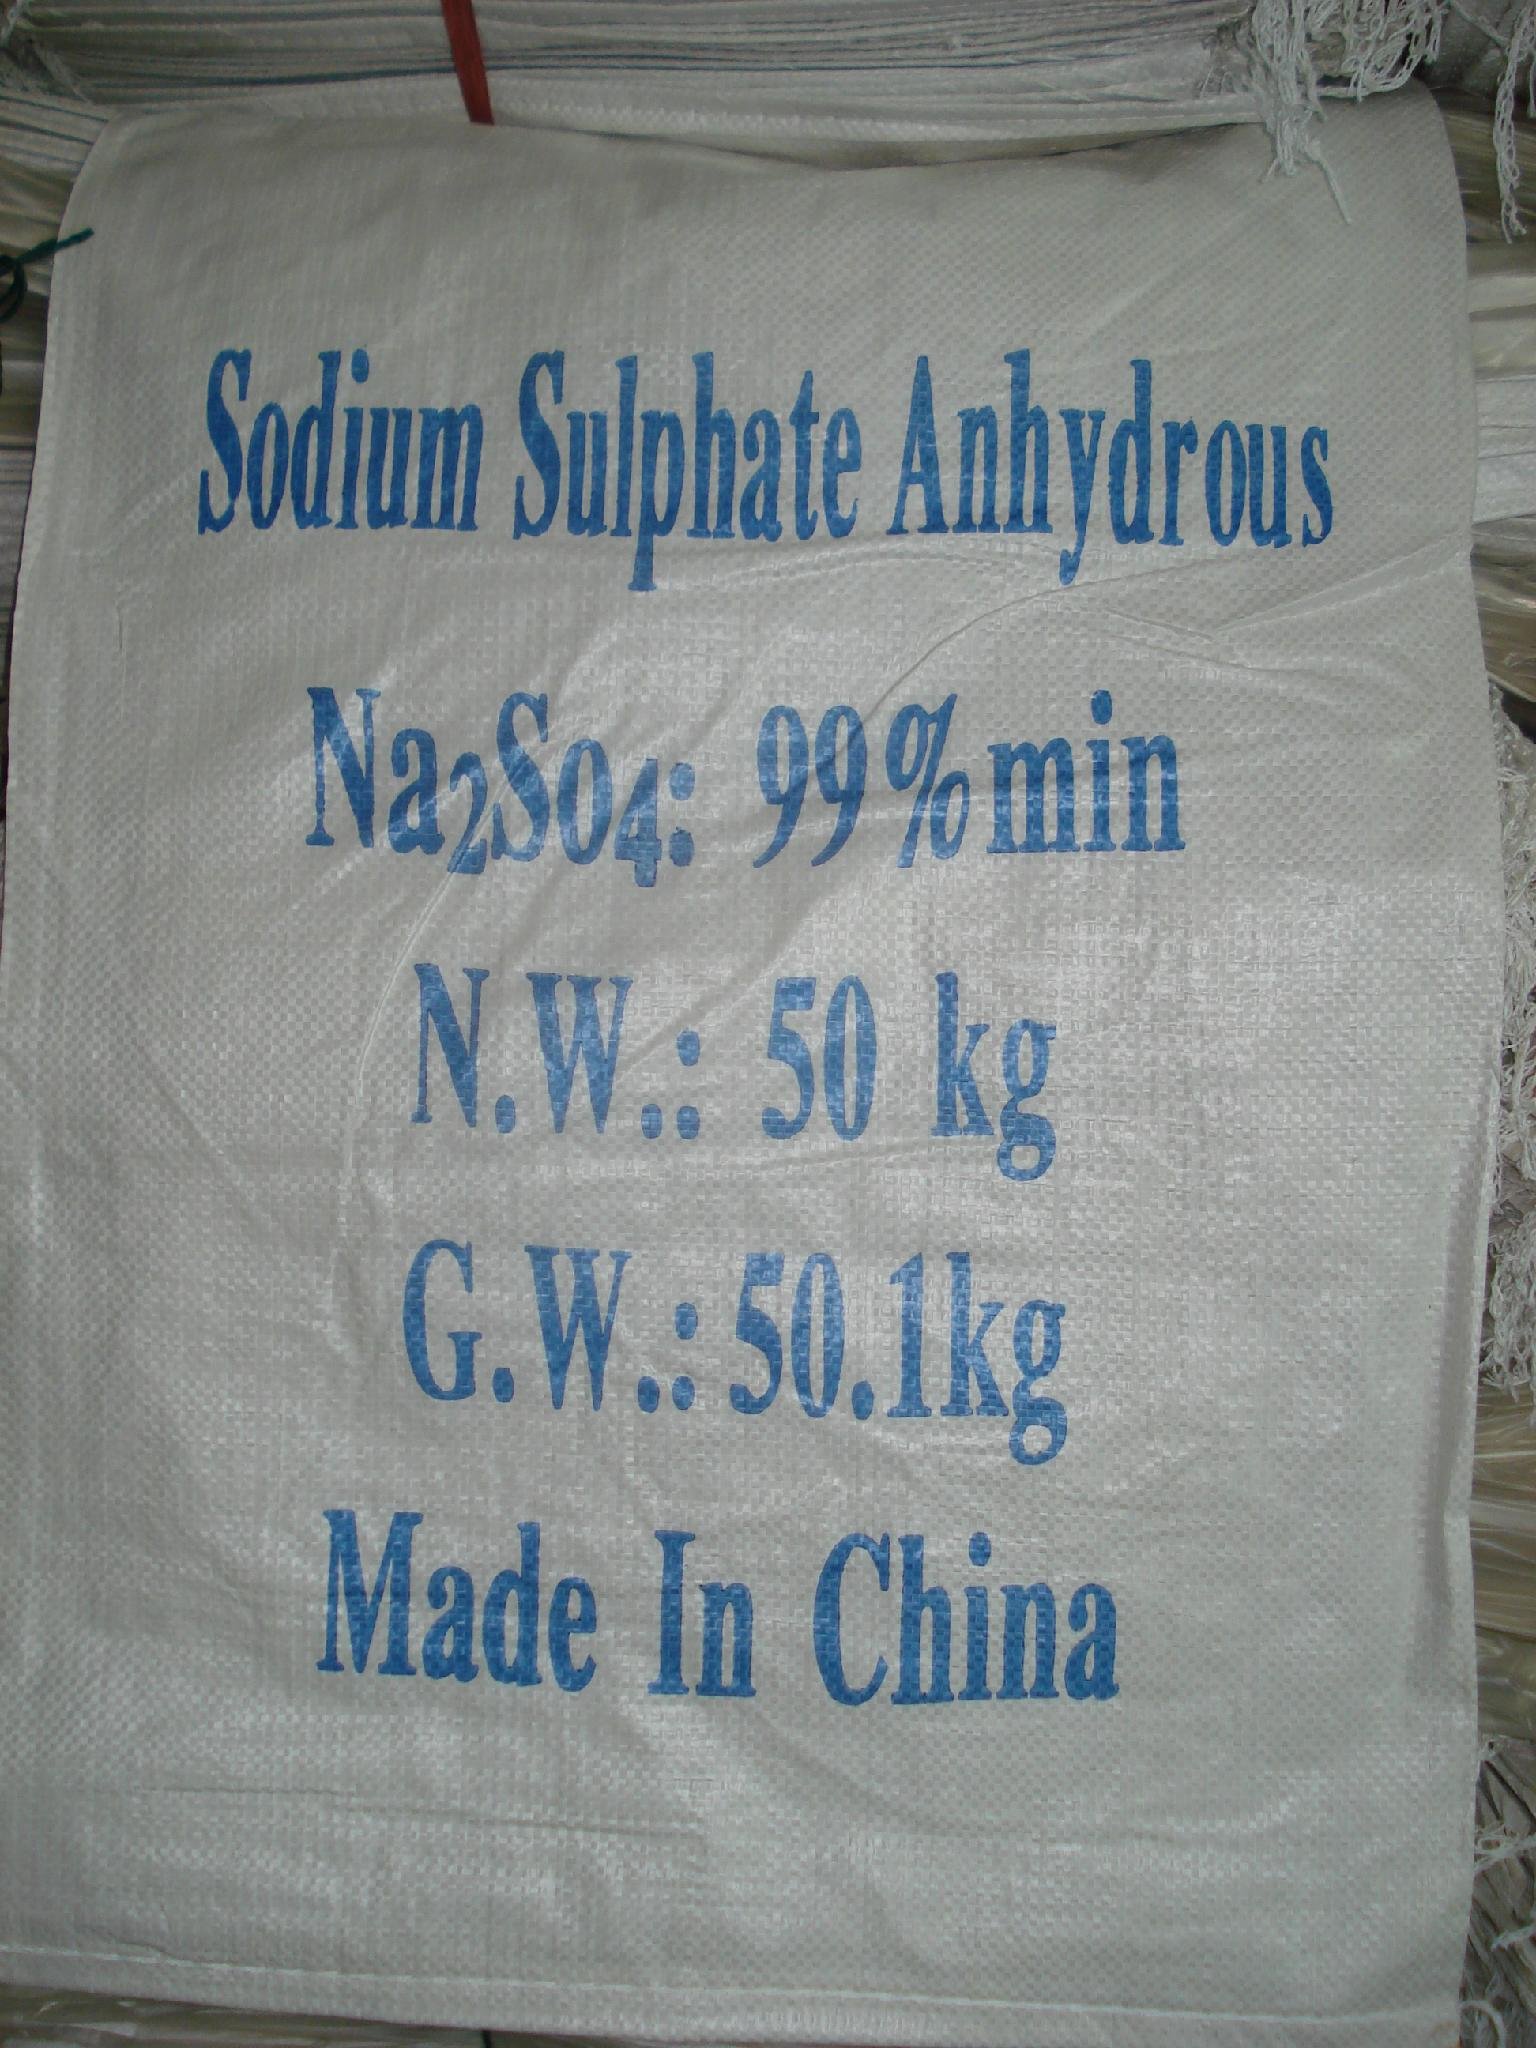  Sodium sulfate 5